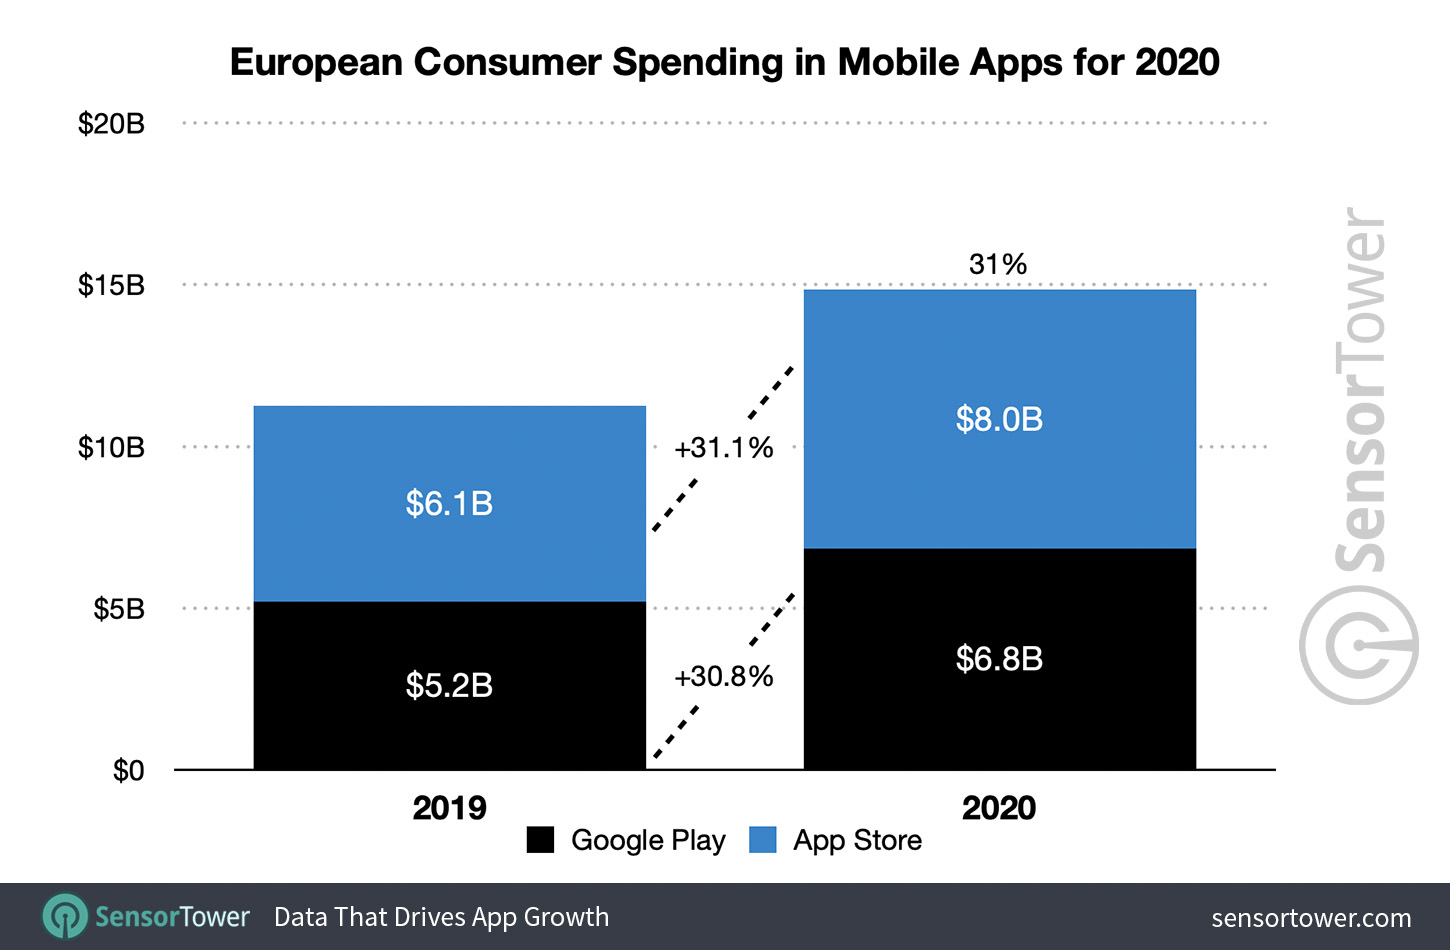 European Consumer Spending in Mobile Apps for 2020